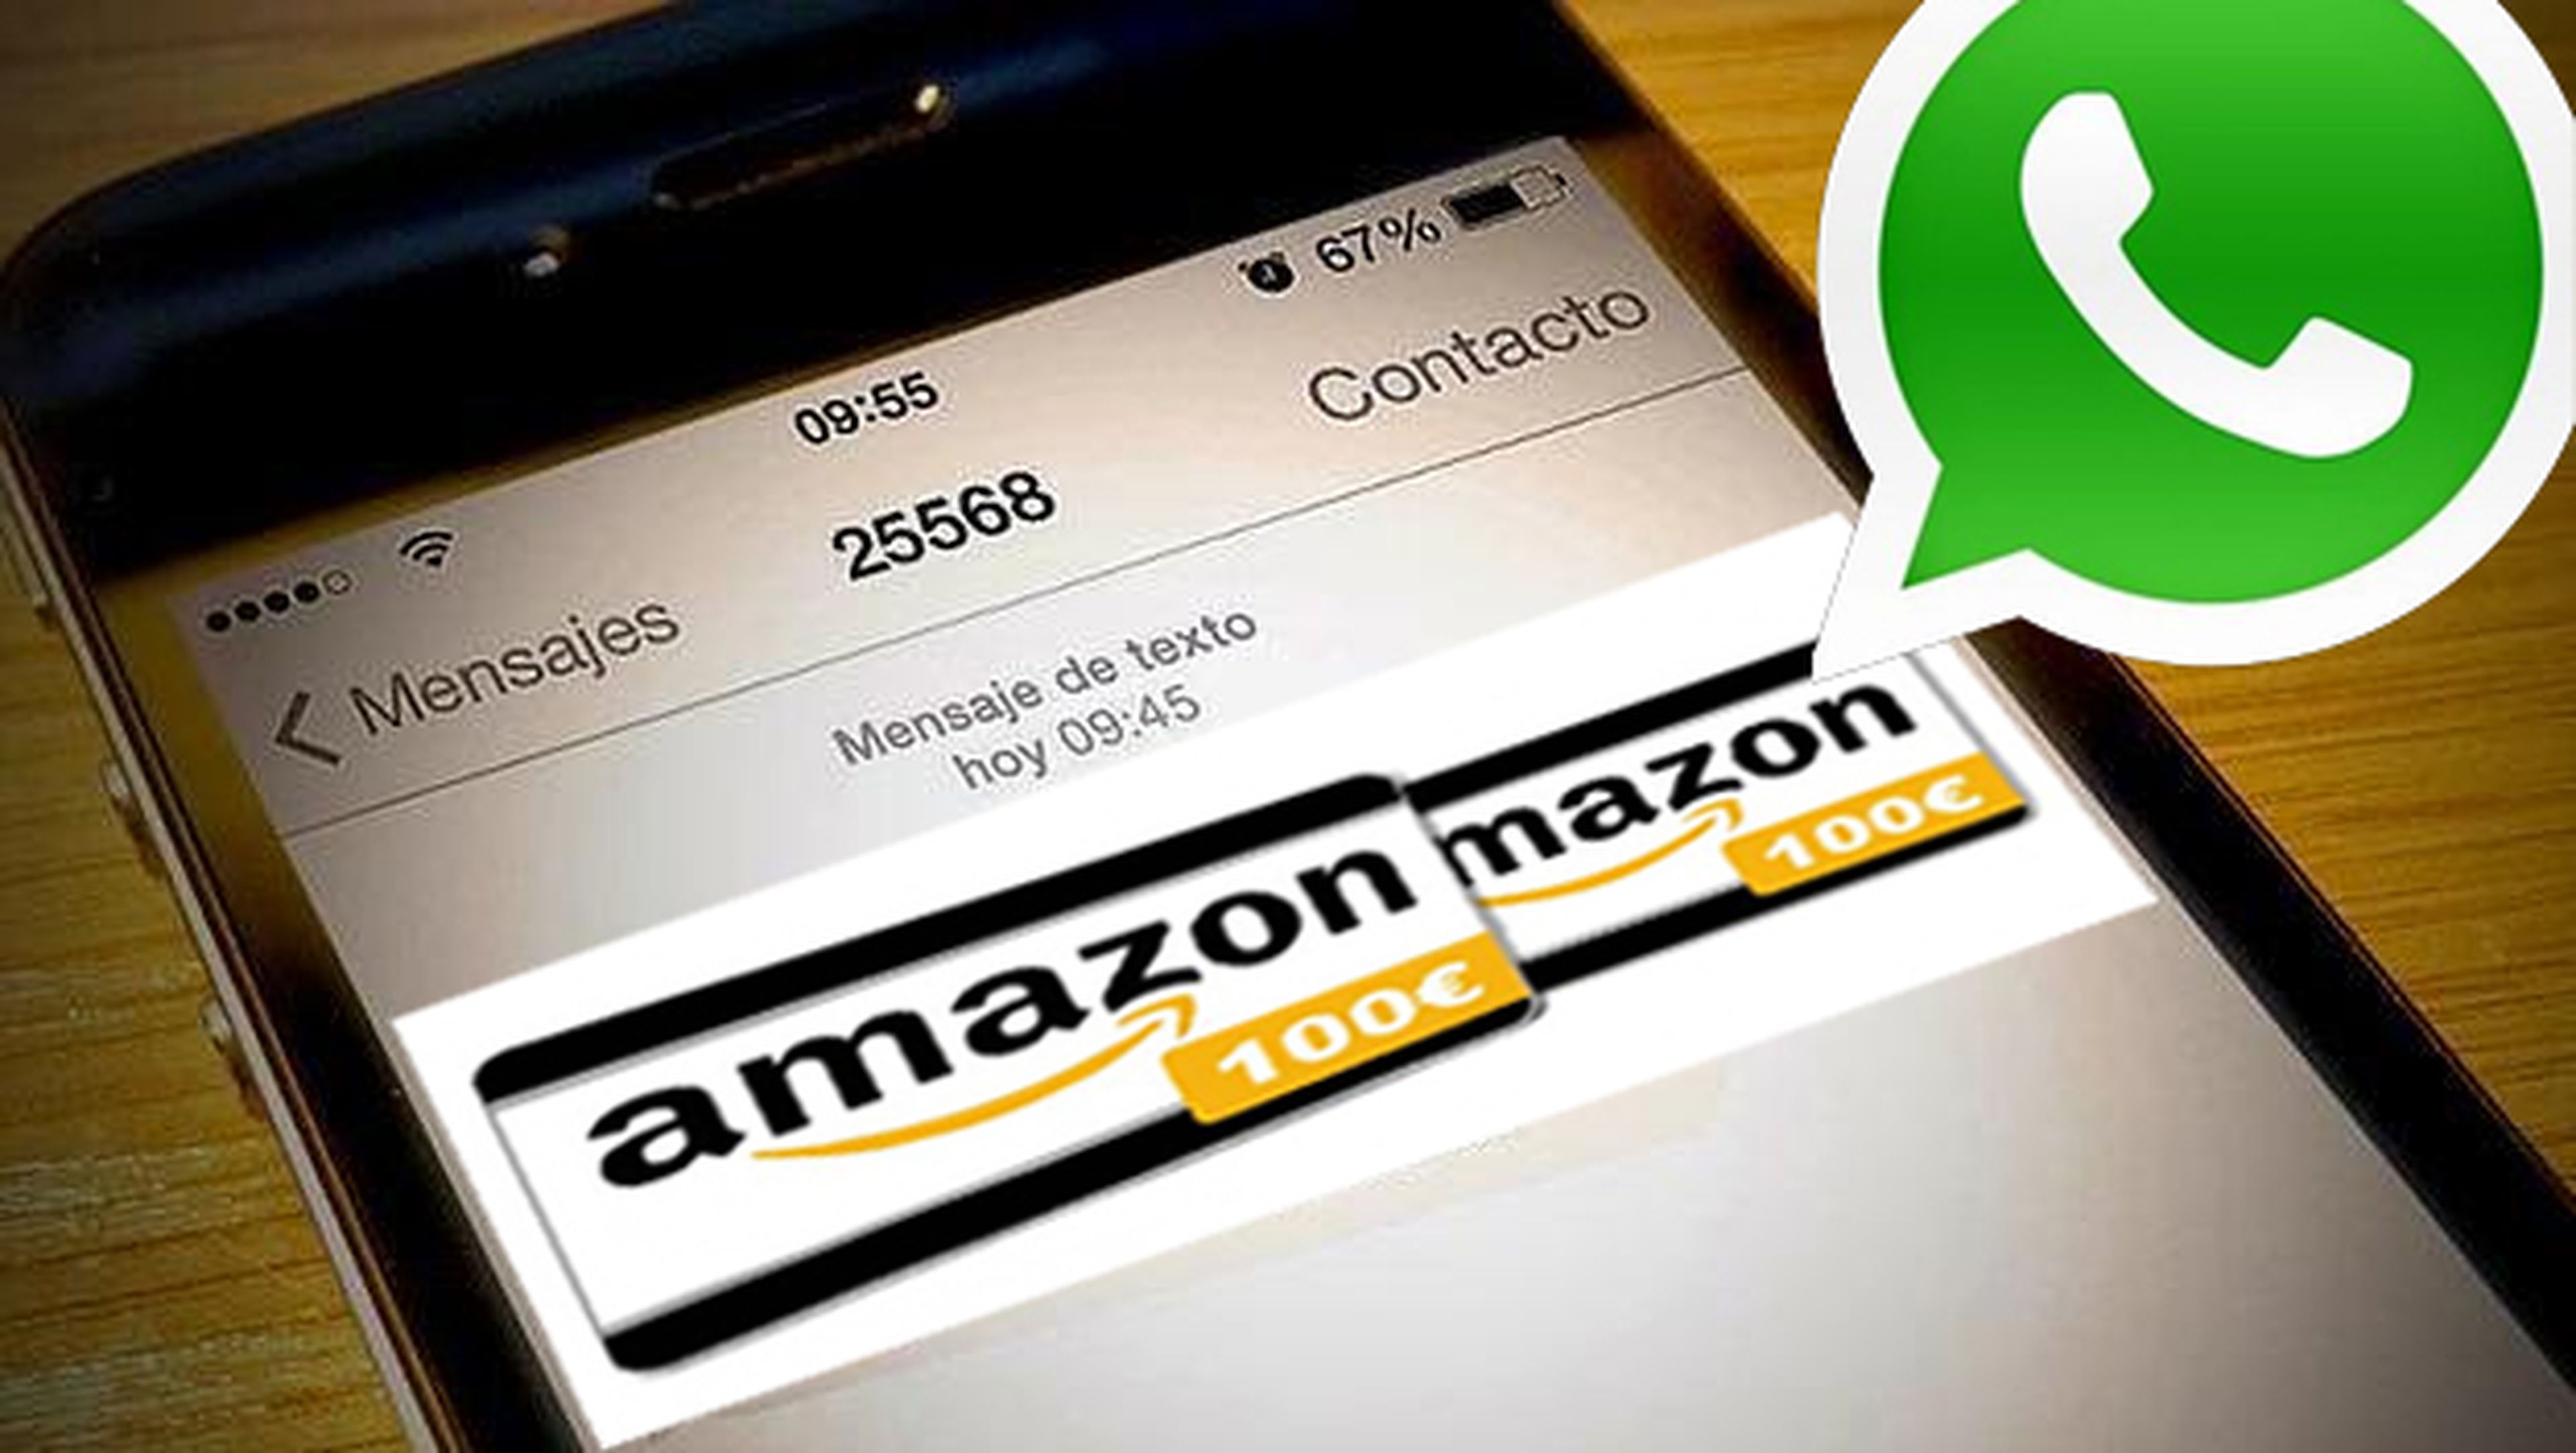 Cuidado, nuevo virus a través de WhatsApp con Amazon como gancho